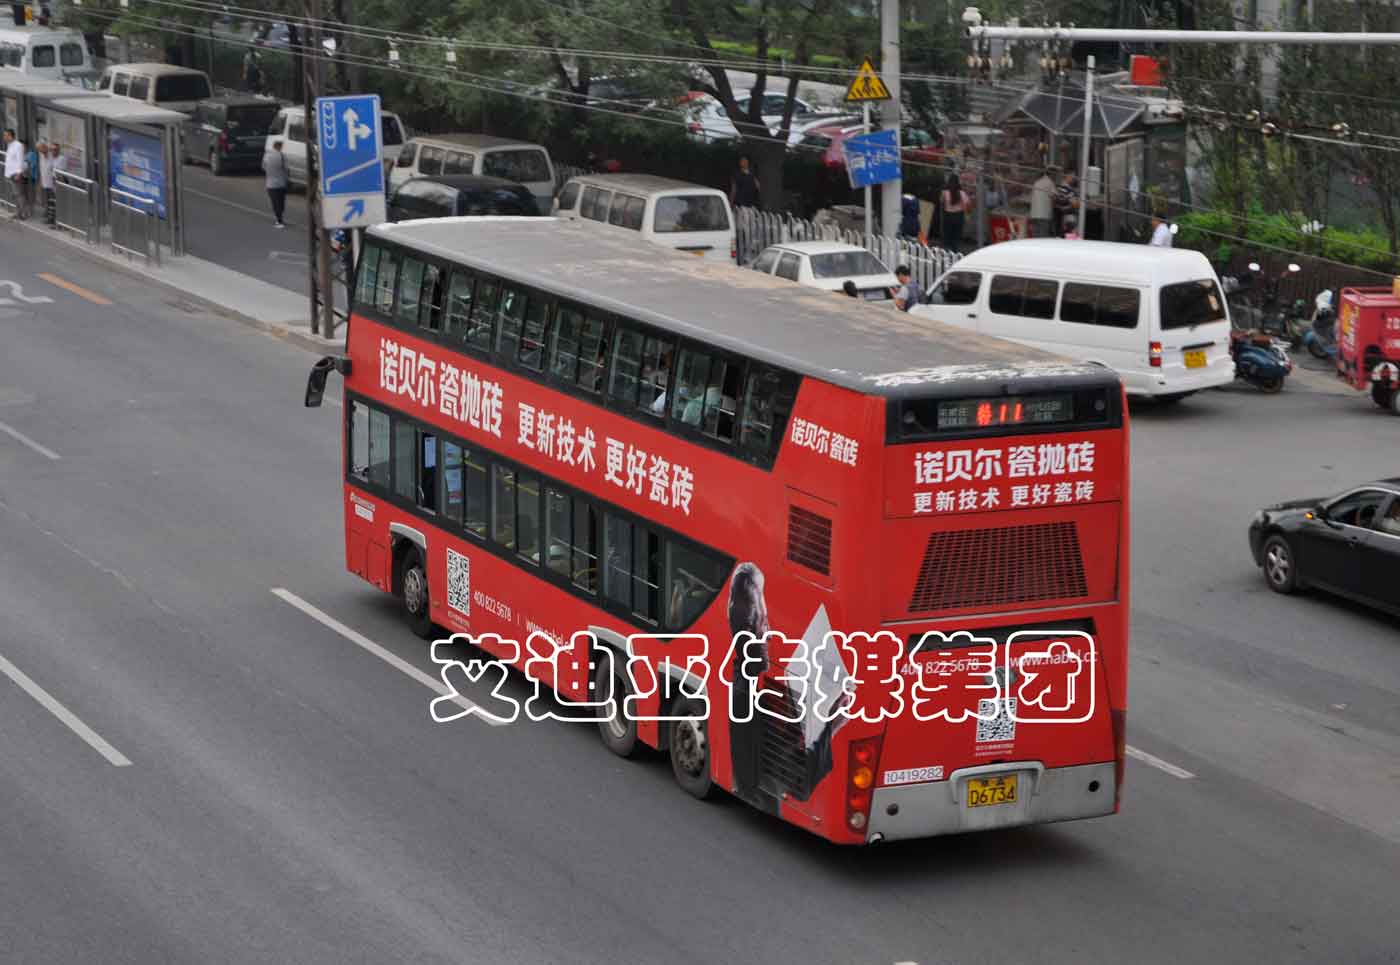 公交车广告案例图片-乐虎国际lehu